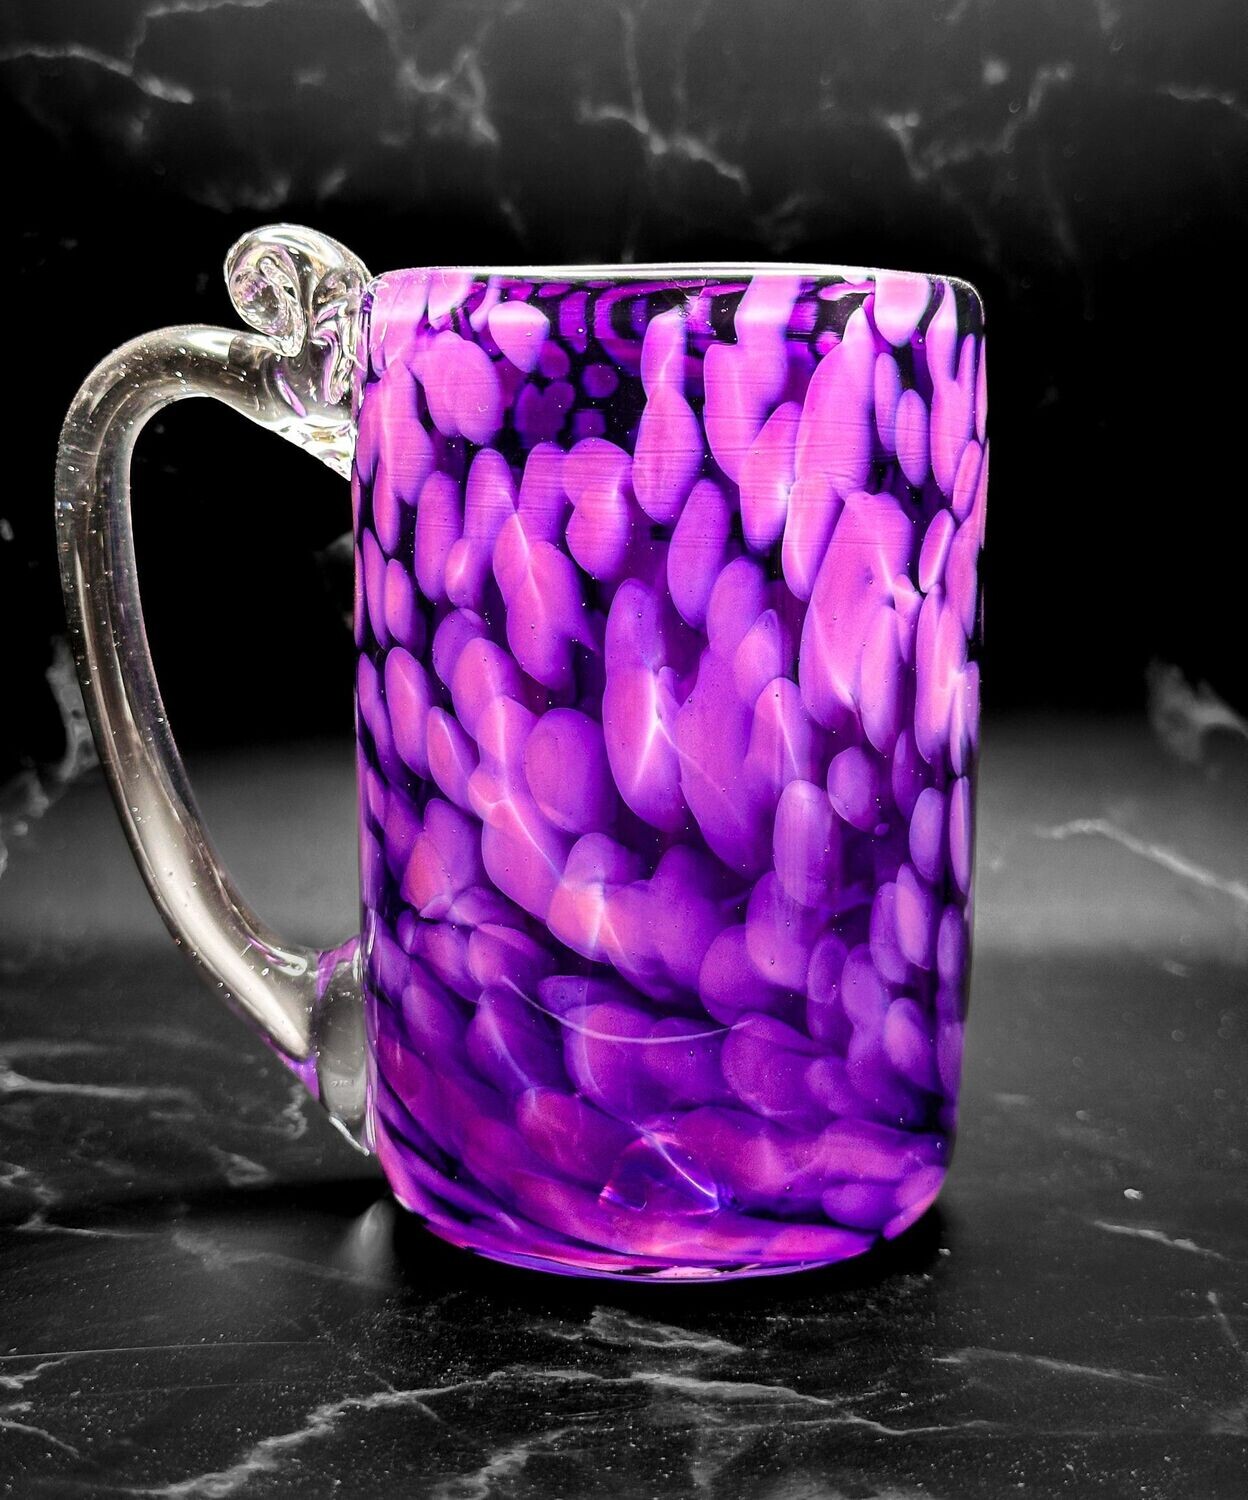 Purple Mug